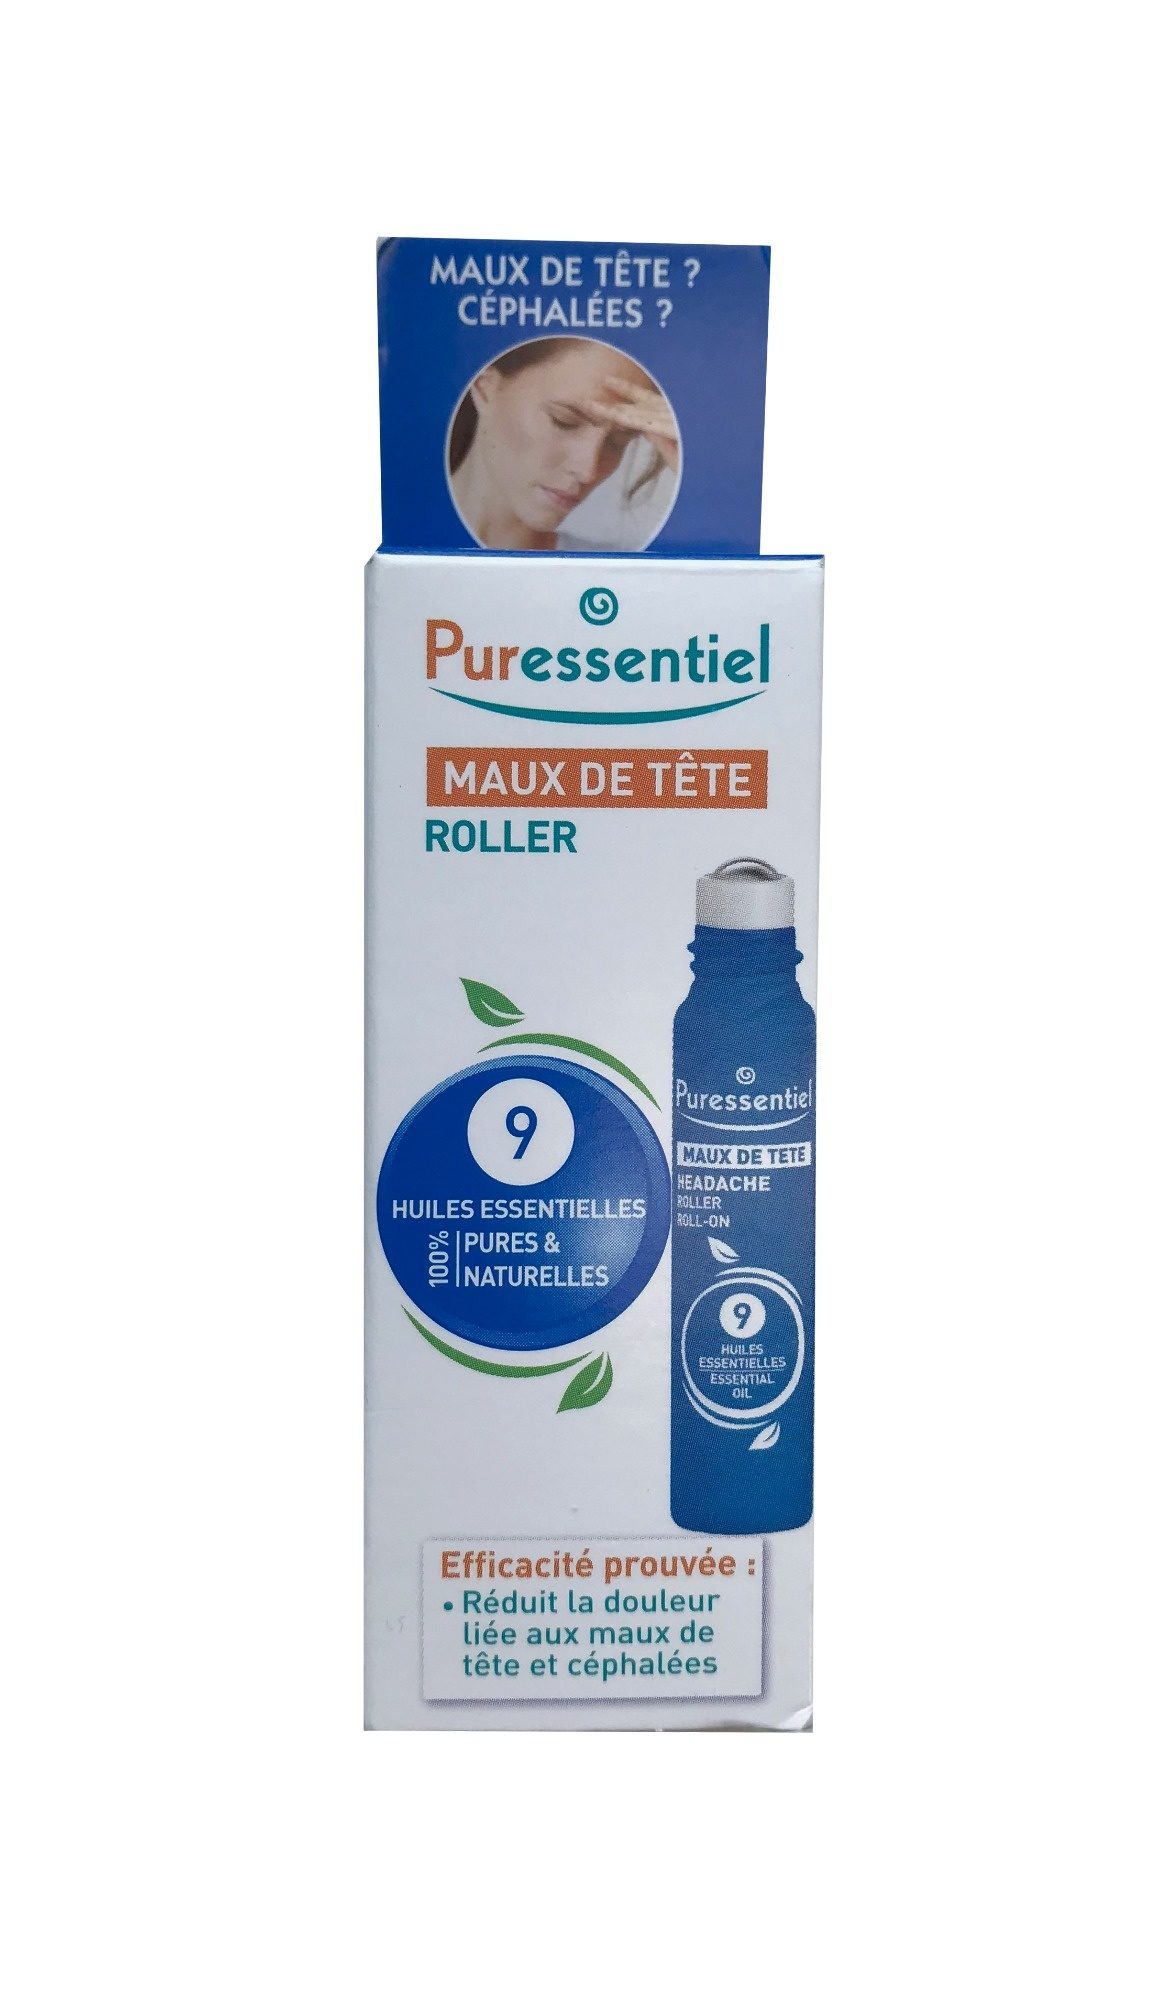 Puressentiel Maux de tête Roller 9 huiles essentielles - Produkt - fr